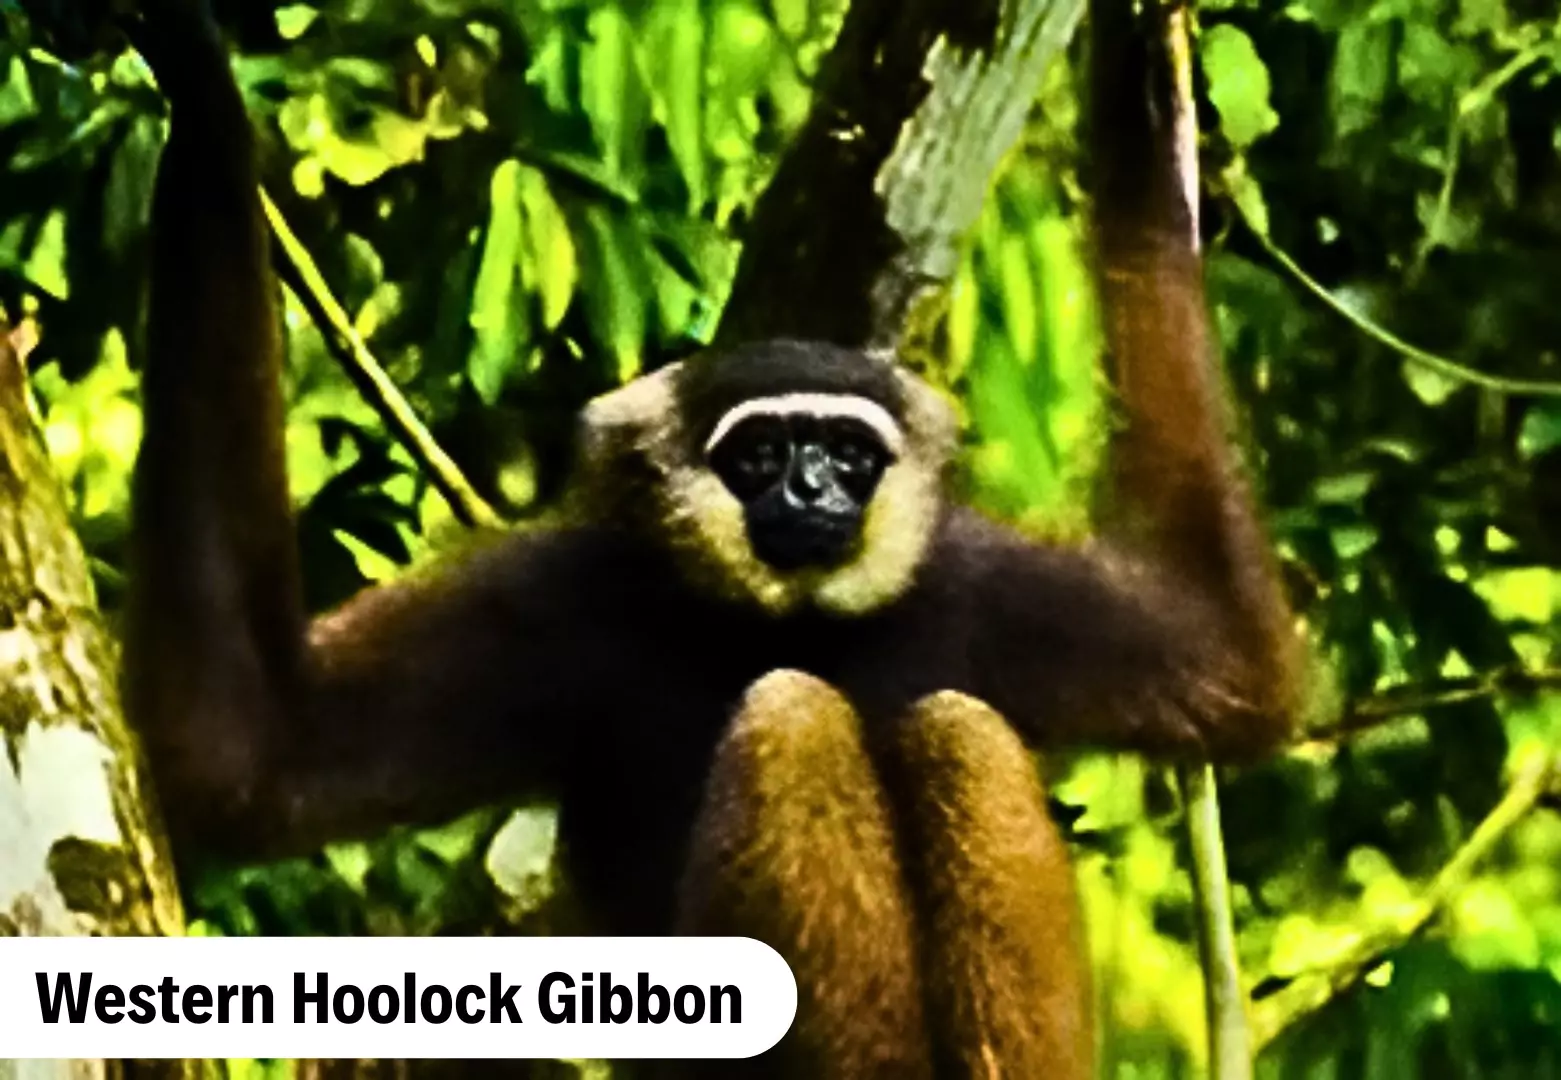 Hollangapar Gibbon Sanctuary
